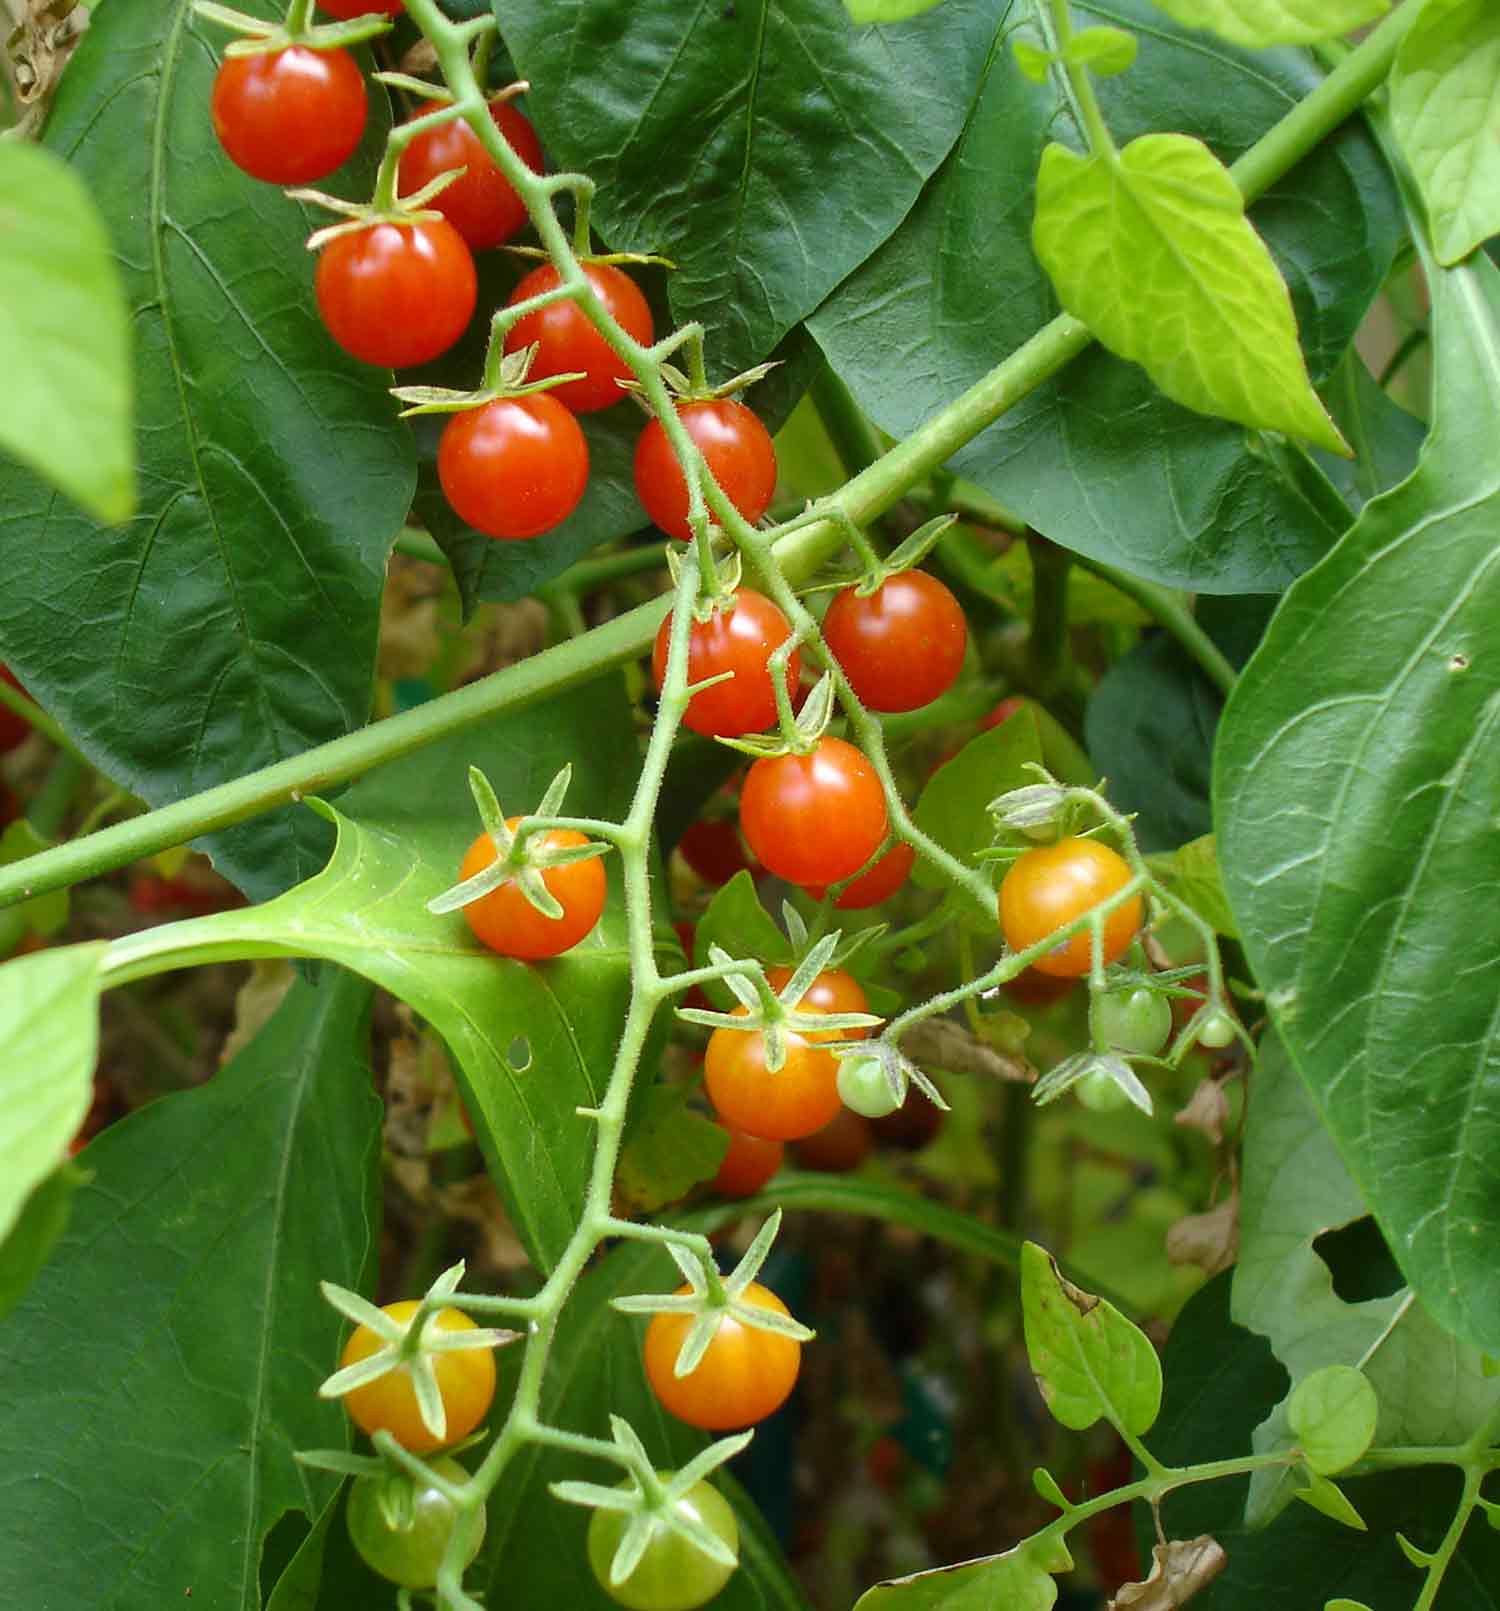 Matt's Wild Cherry tomatoes on the vine.